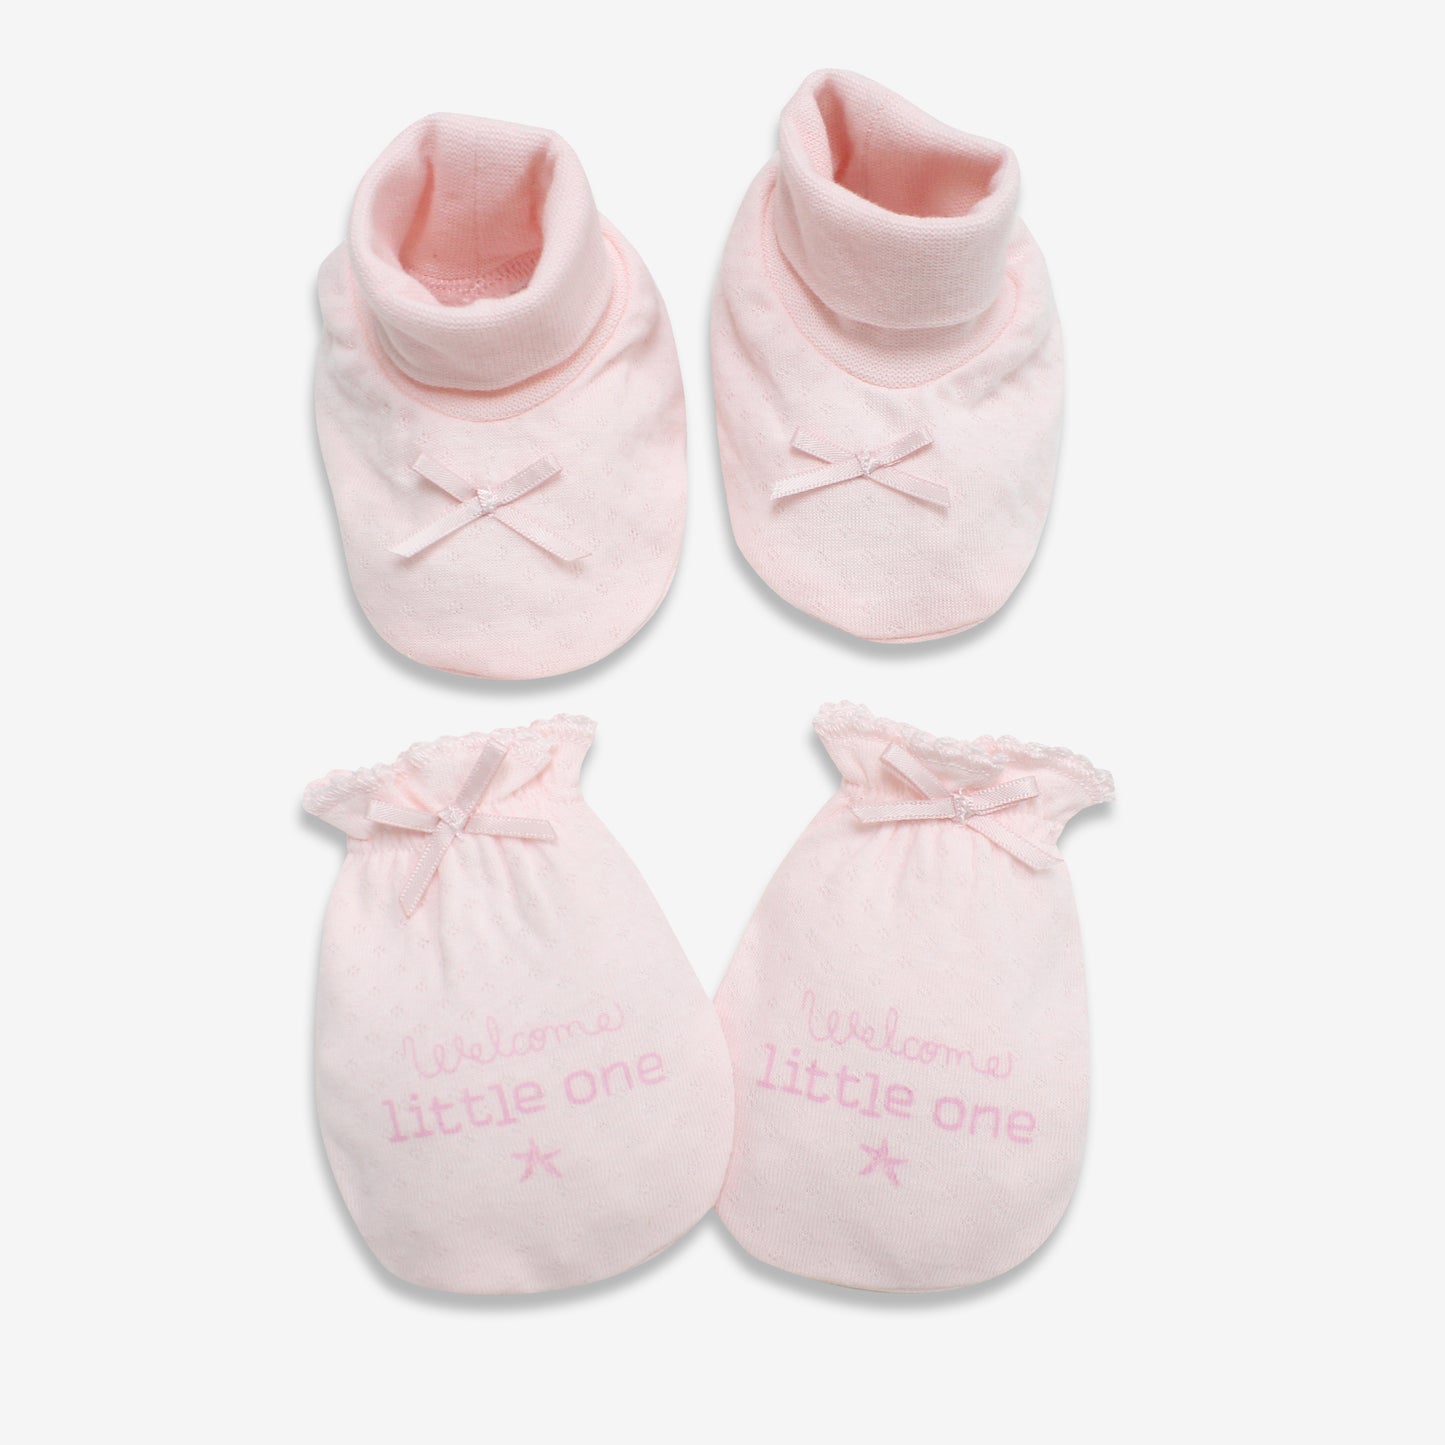 嬰兒 粉紅色手套及腳套